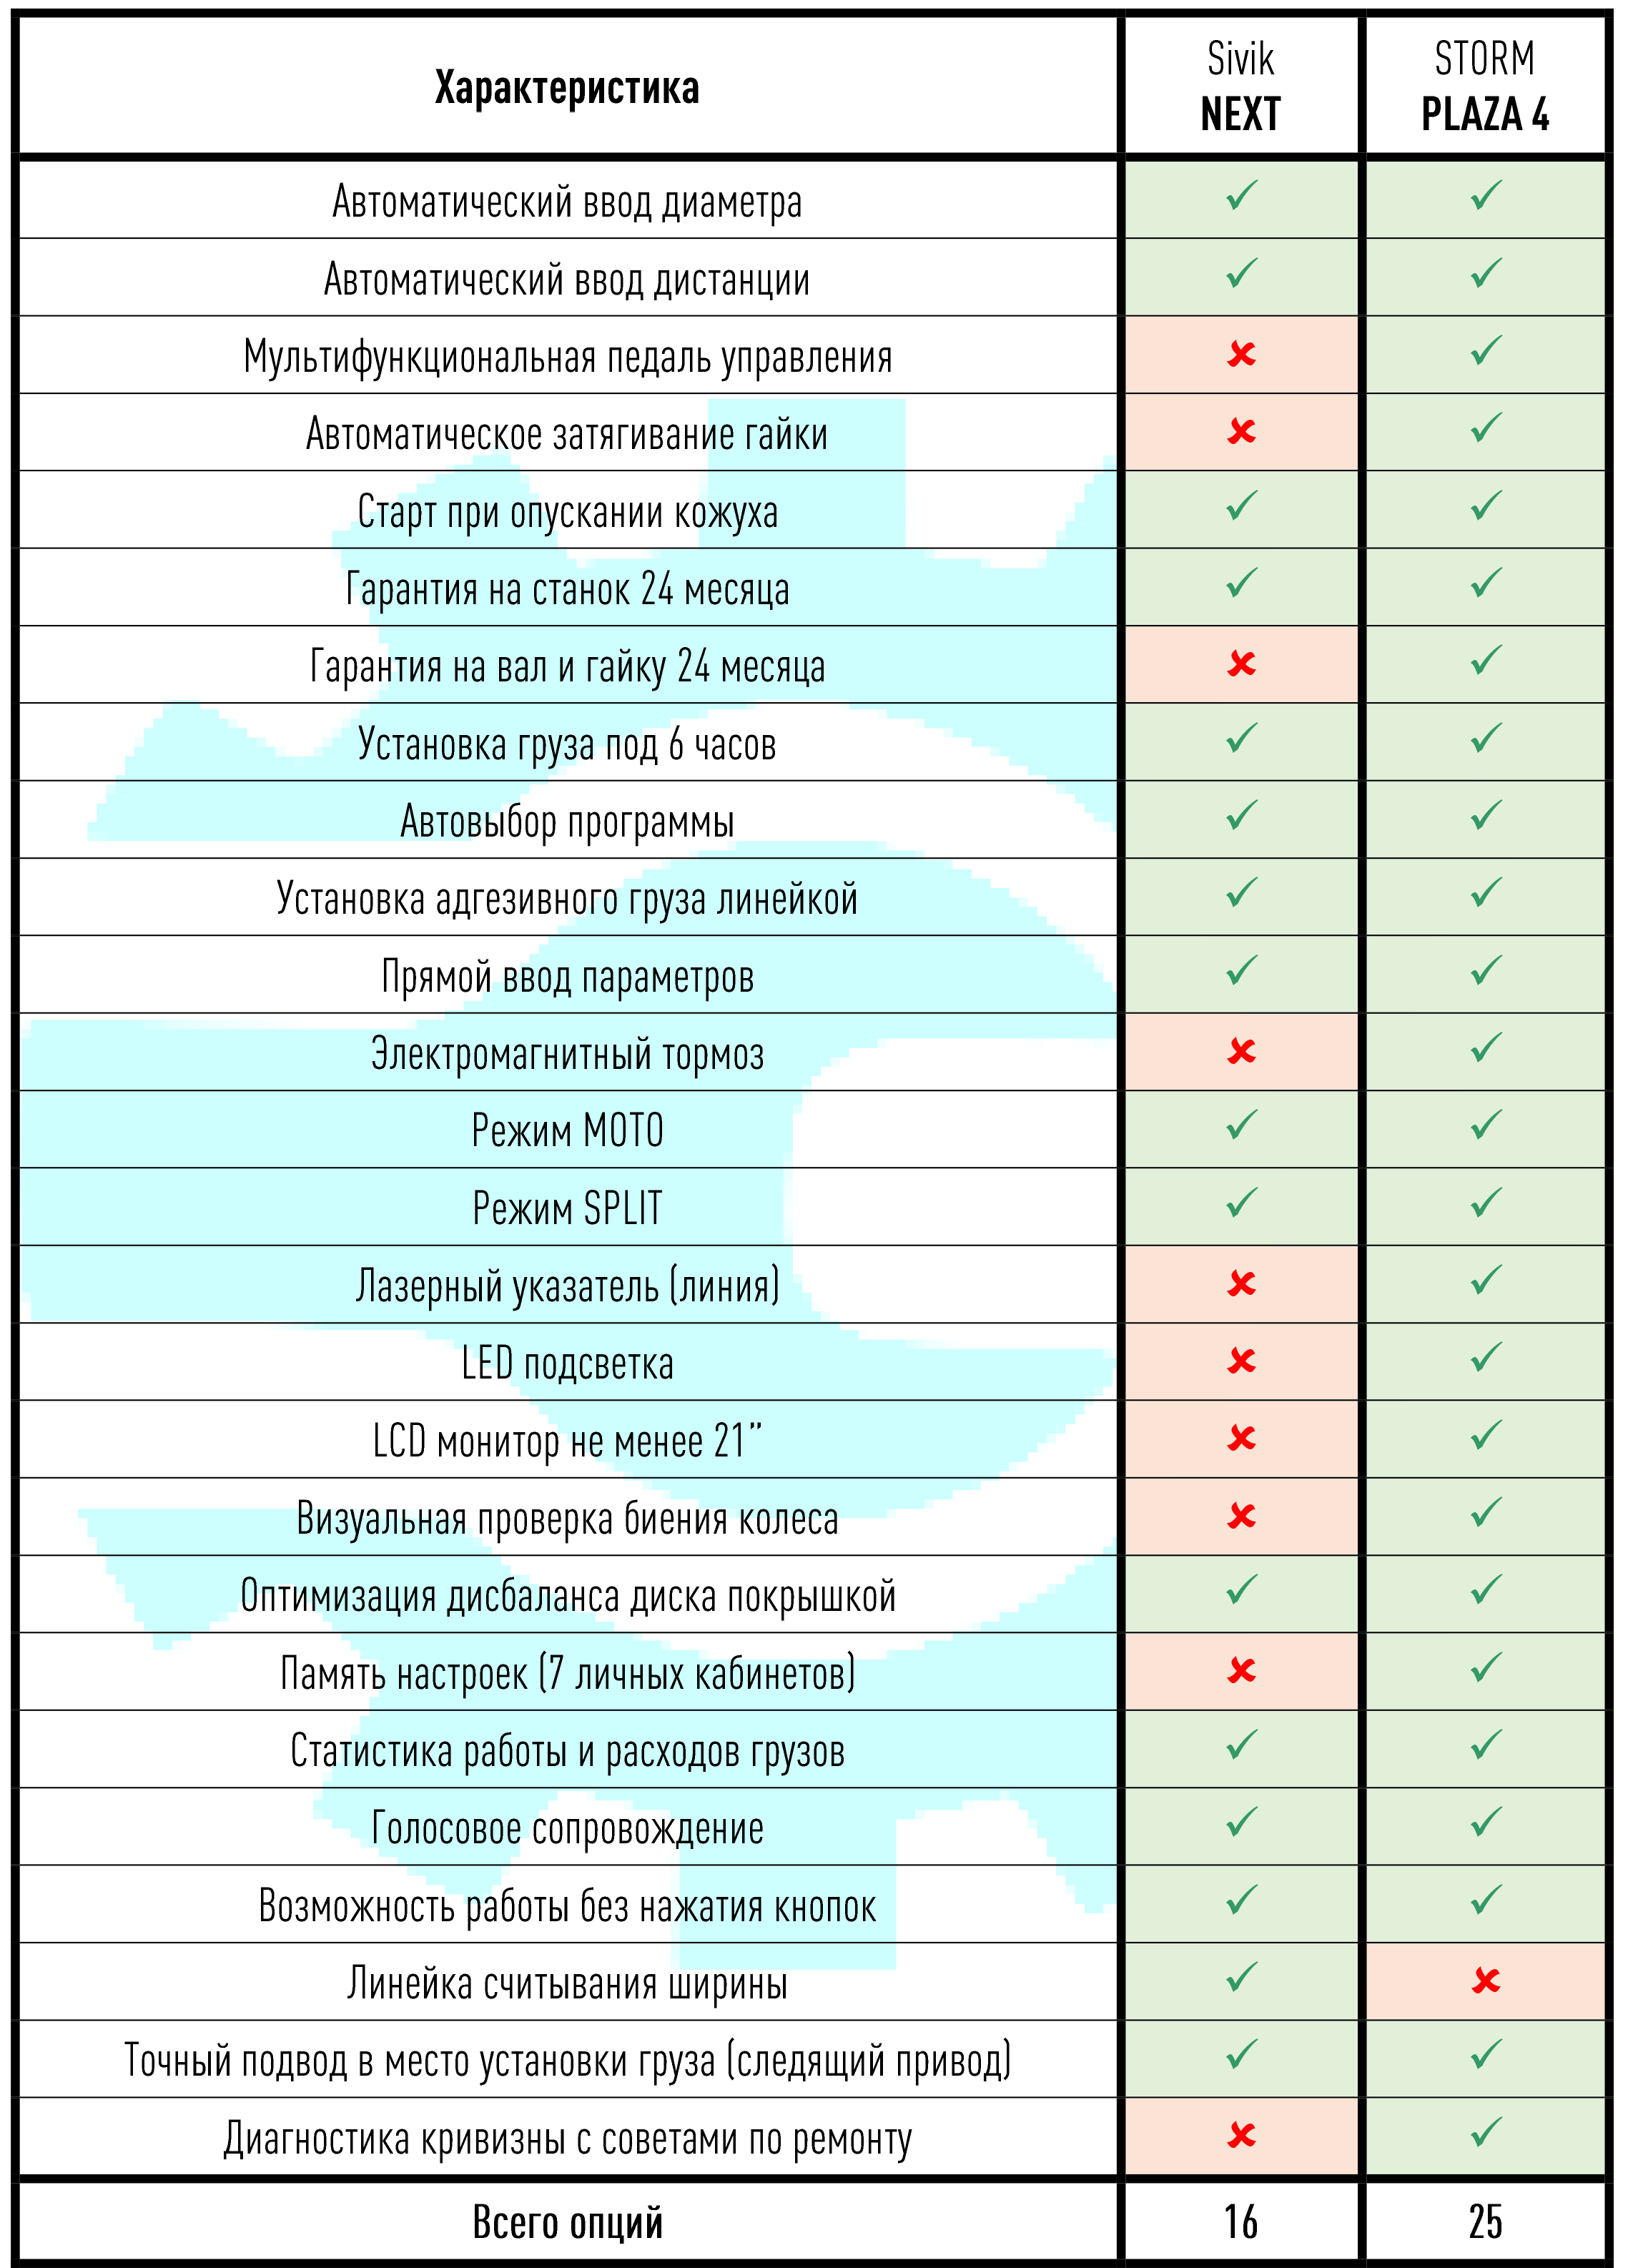 Сравнительная таблица балансировочных станков СТОРМ и Сивик